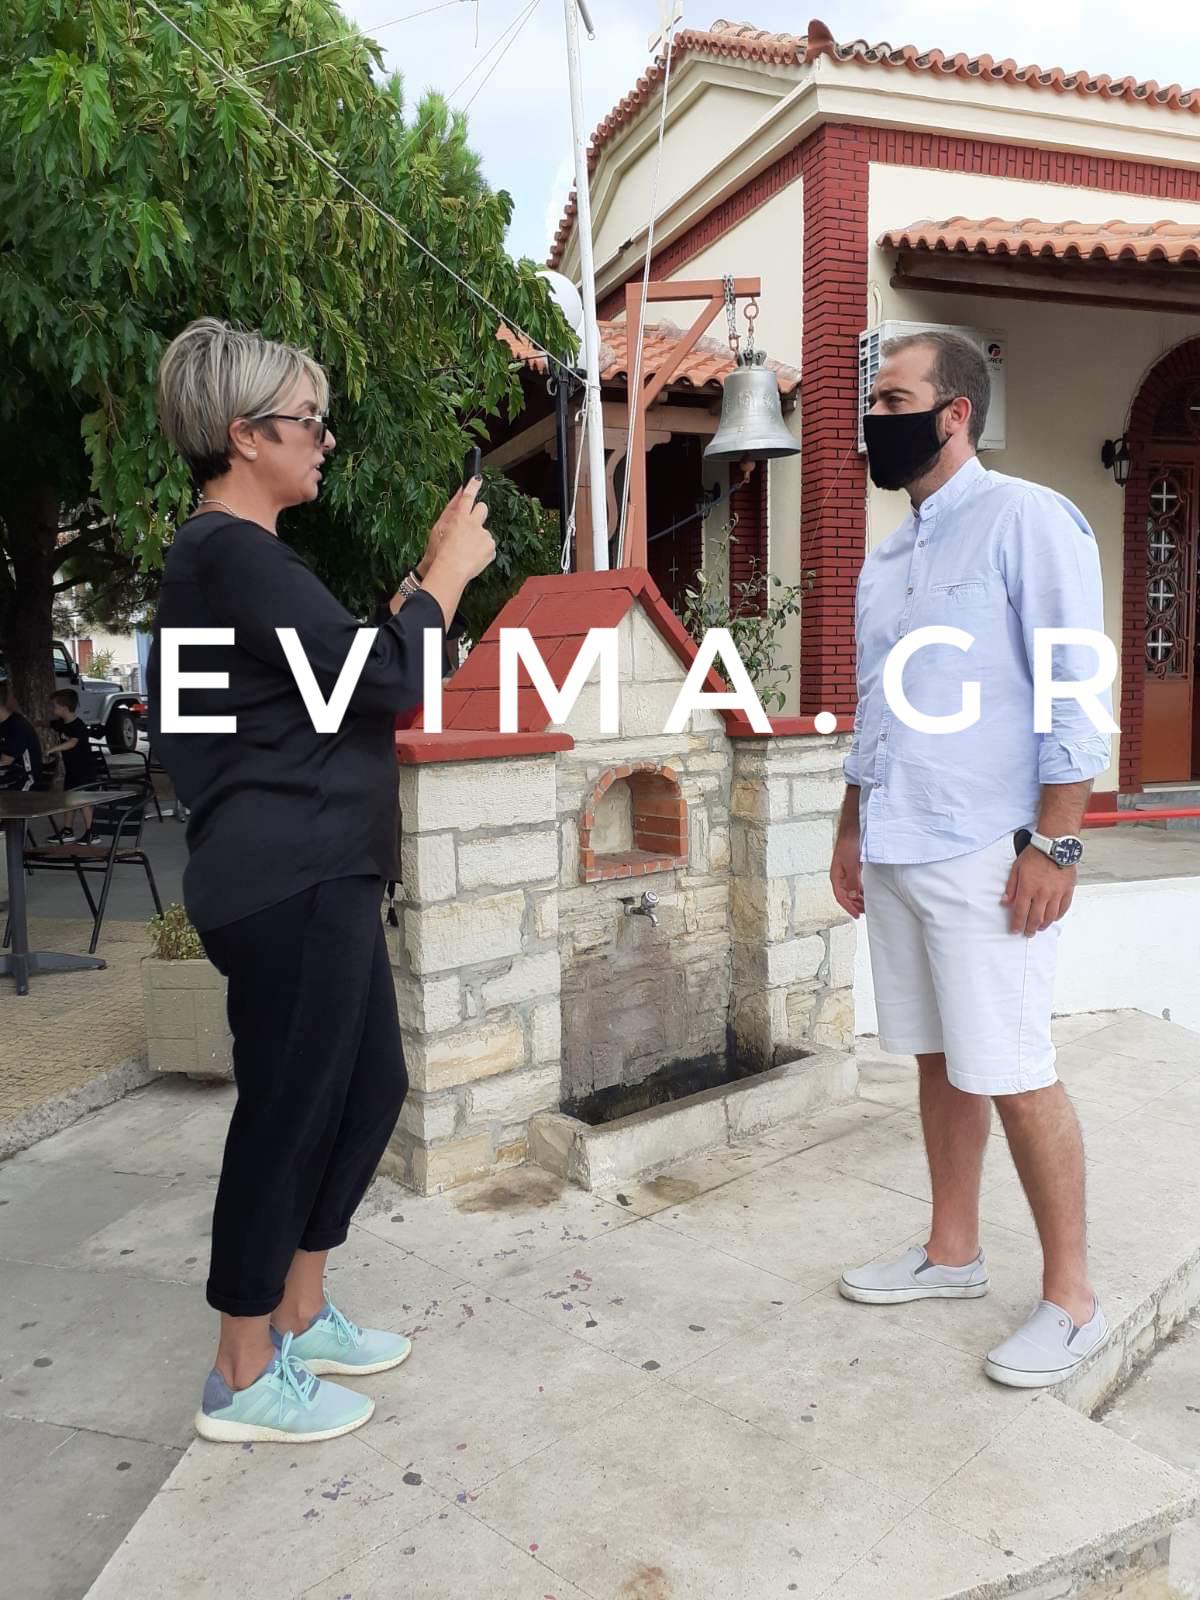 Ο αντιδήμαρχος Κύμης στο evima για την 18η Ανάβαση Κύμης [βίντεο]